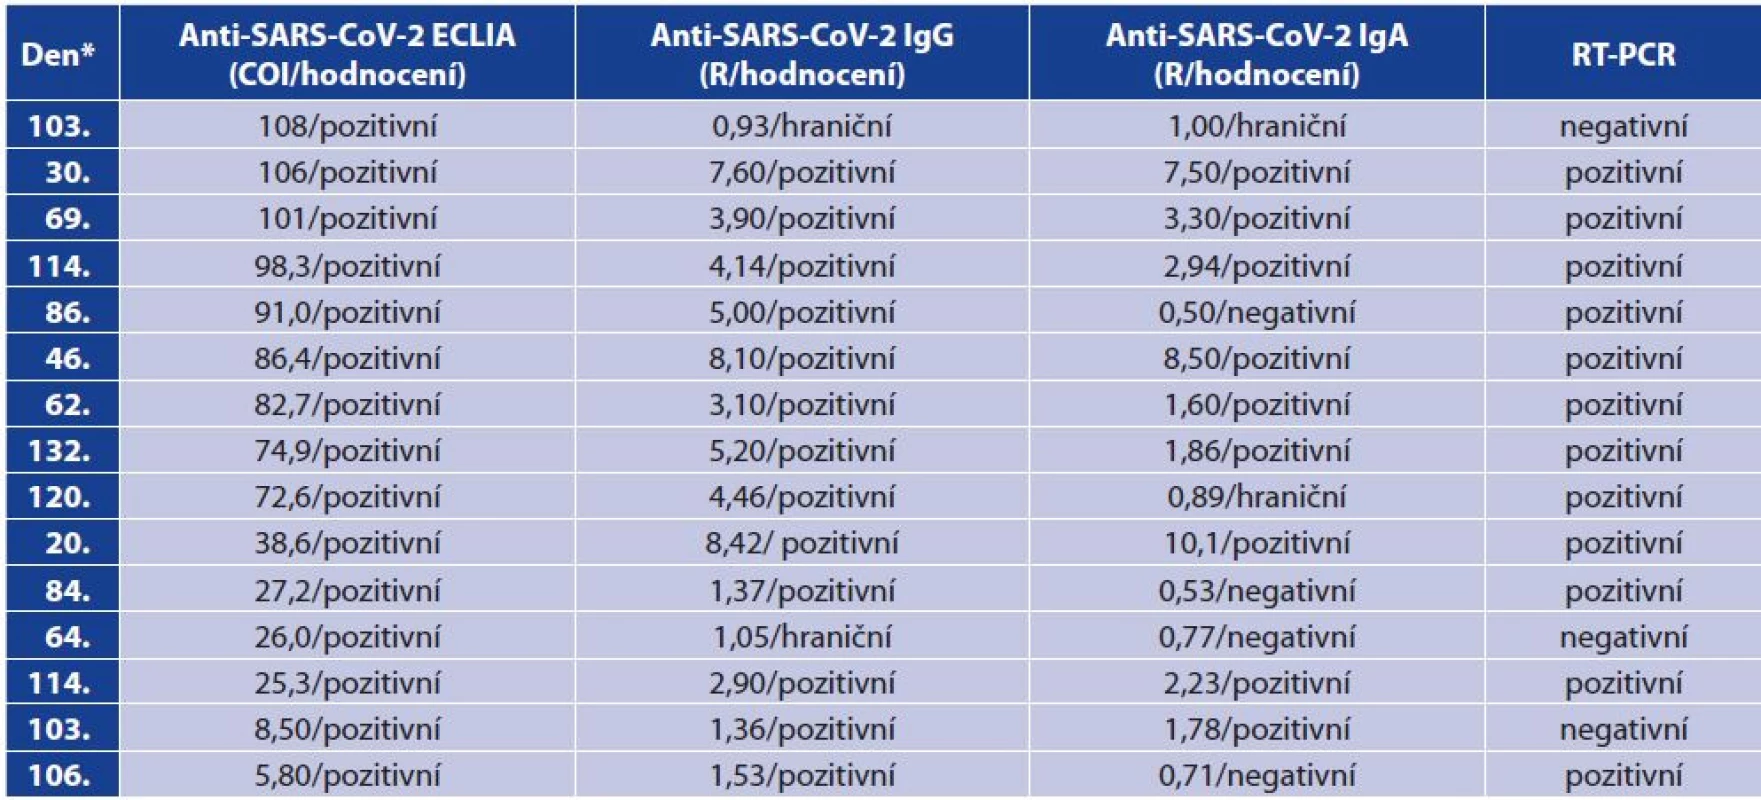 Pozitivní protilátky stanovené pomocí ECLIA – vztah k jednotlivým třídám IgG a IgA v ELISA<br>
Table 6. ECLIA positivity for antibodies – correlation with ELISA IgG and IgA antibodies